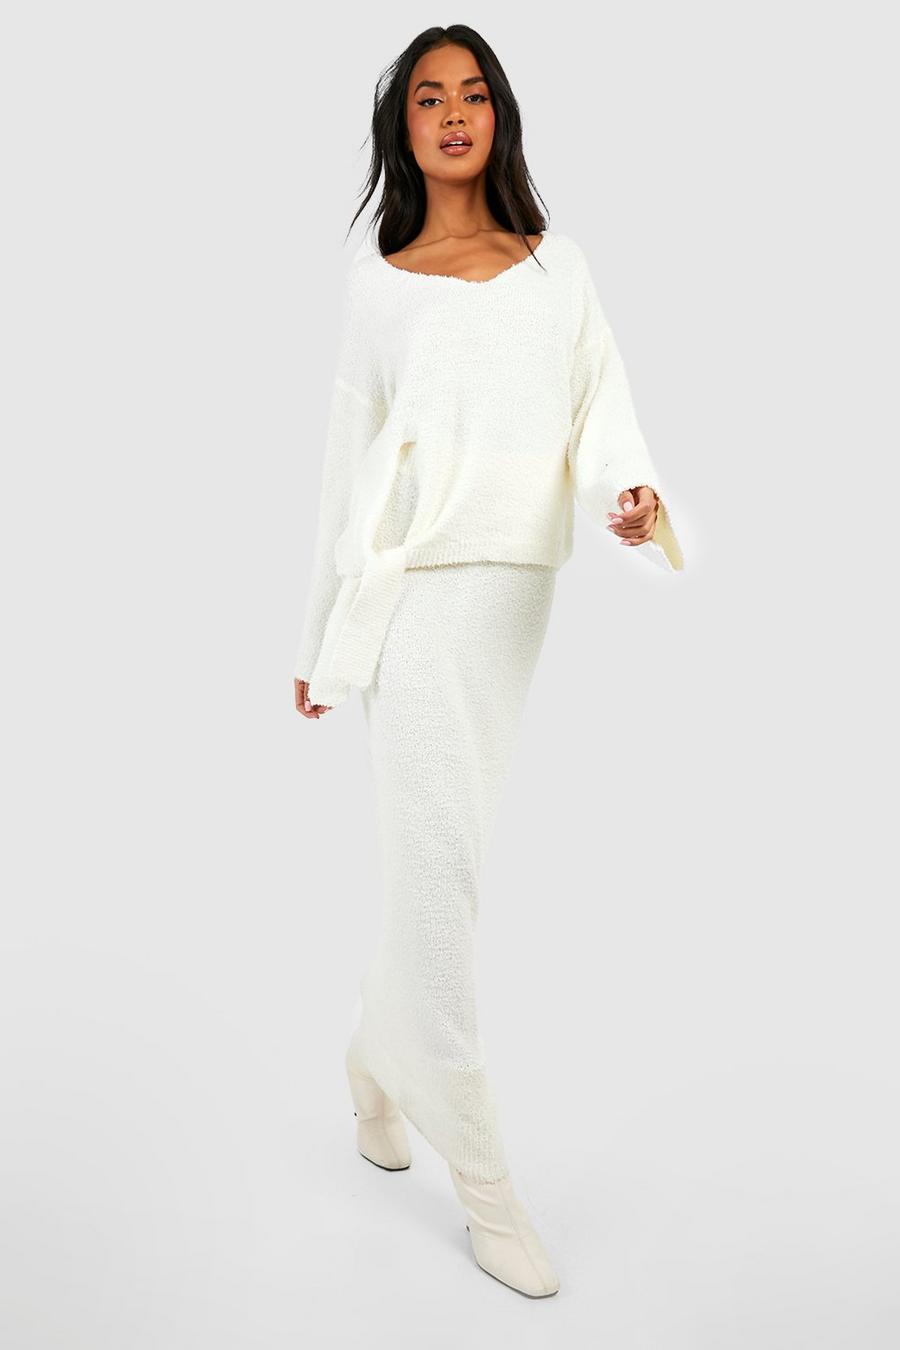 Ensemble premium texturé avec pull ample et jupe longue, Ivory blanc image number 1